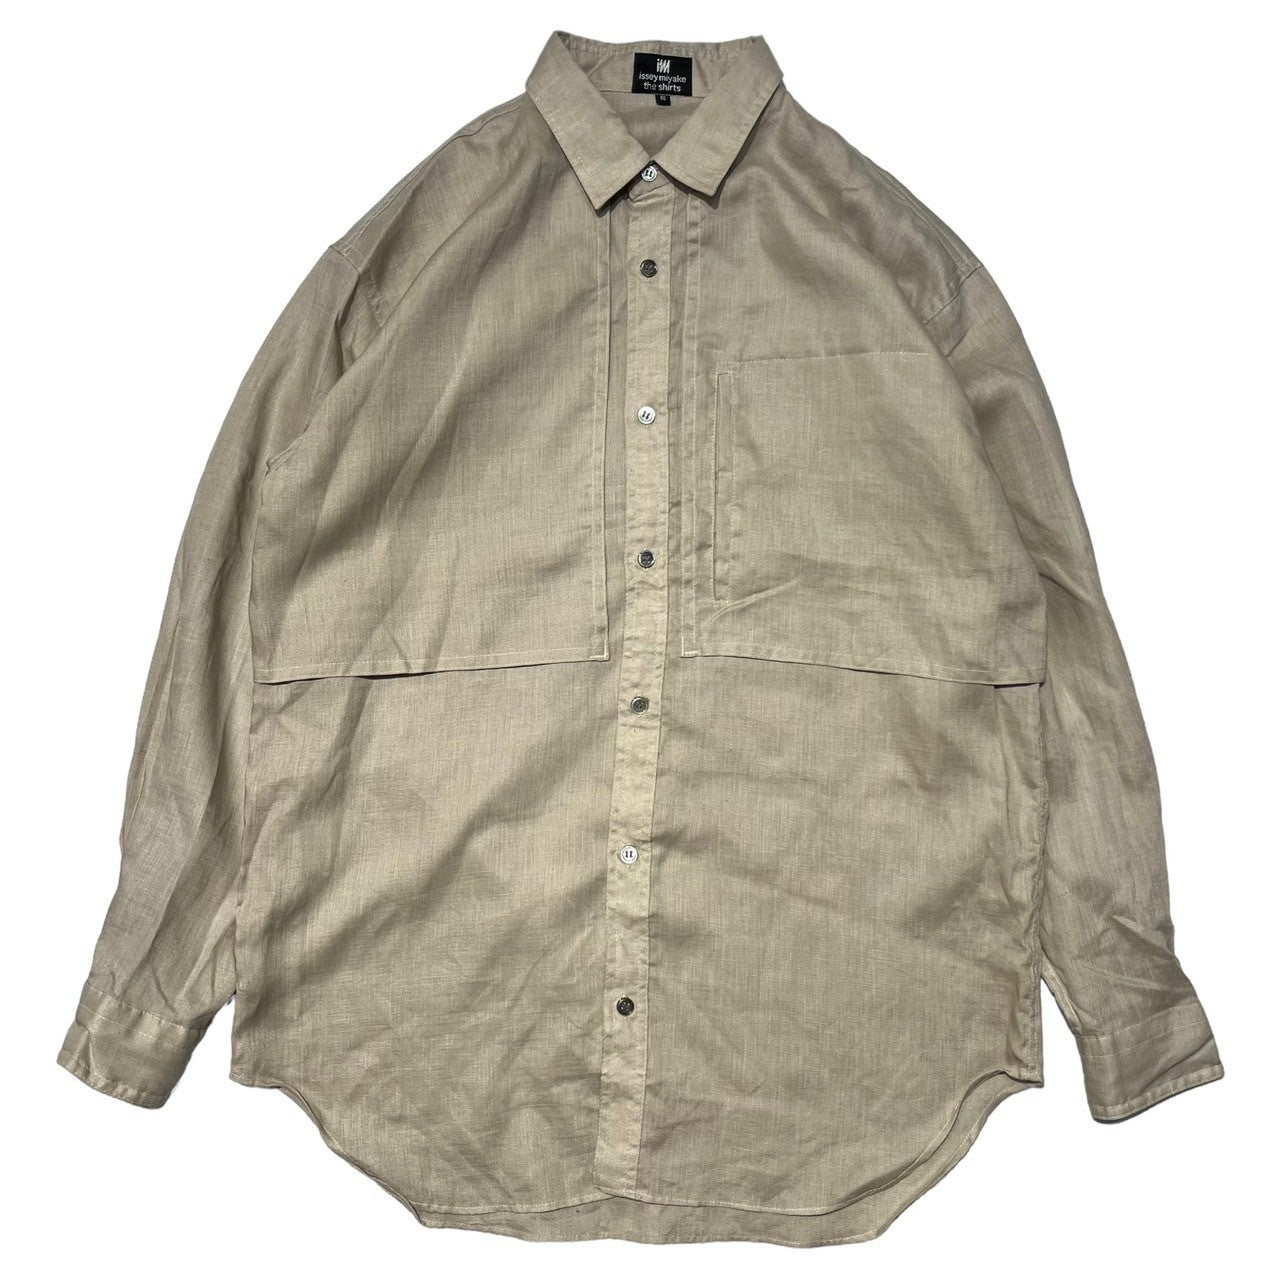 ISSEY MIYAKE(イッセイミヤケ) 80's ~ 90's  linen trench shirt リネン トレンチ シャツ ハミルトン社製 I67507-B S ベージュ 90年代 ヴィンテージ アーカイブ デッドストック